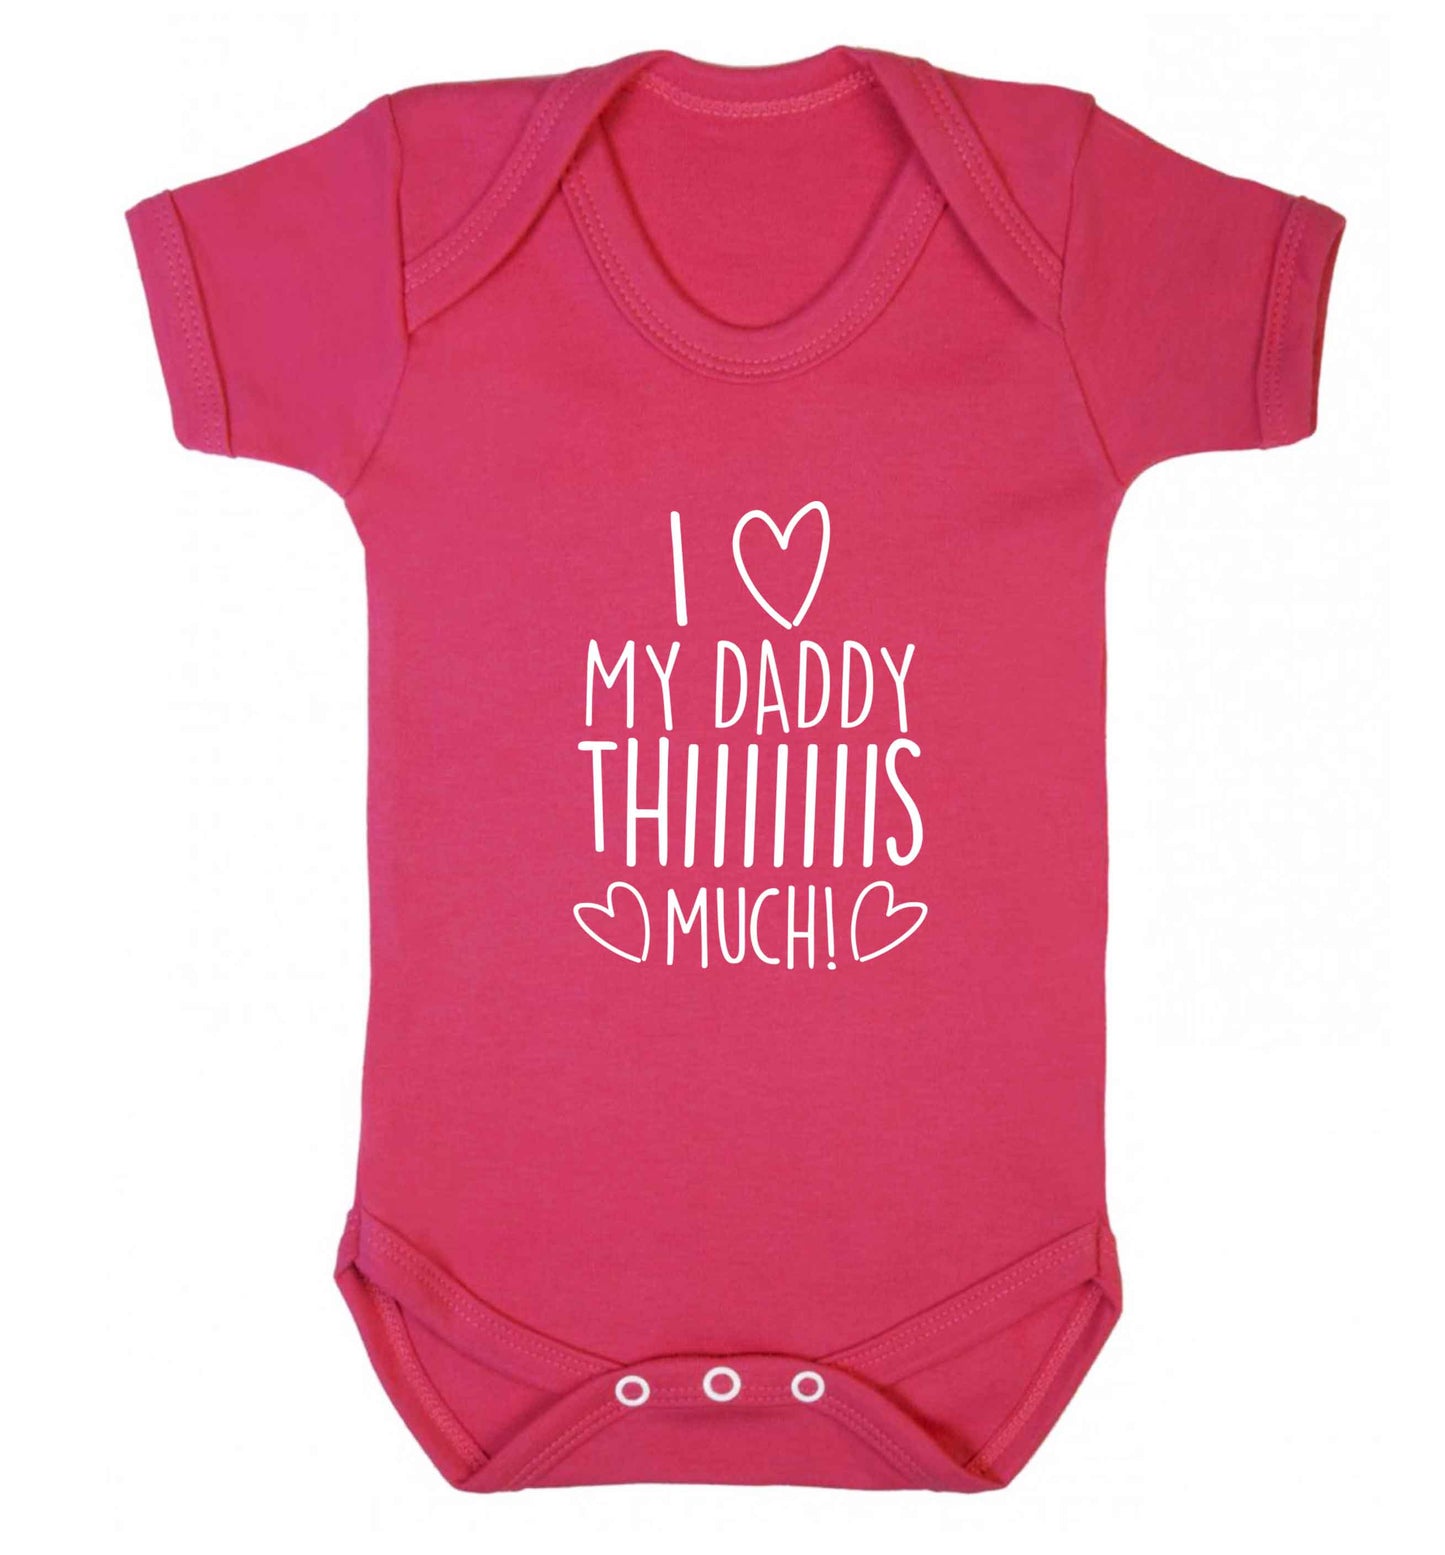 I love my daddy thiiiiis much! baby vest dark pink 18-24 months